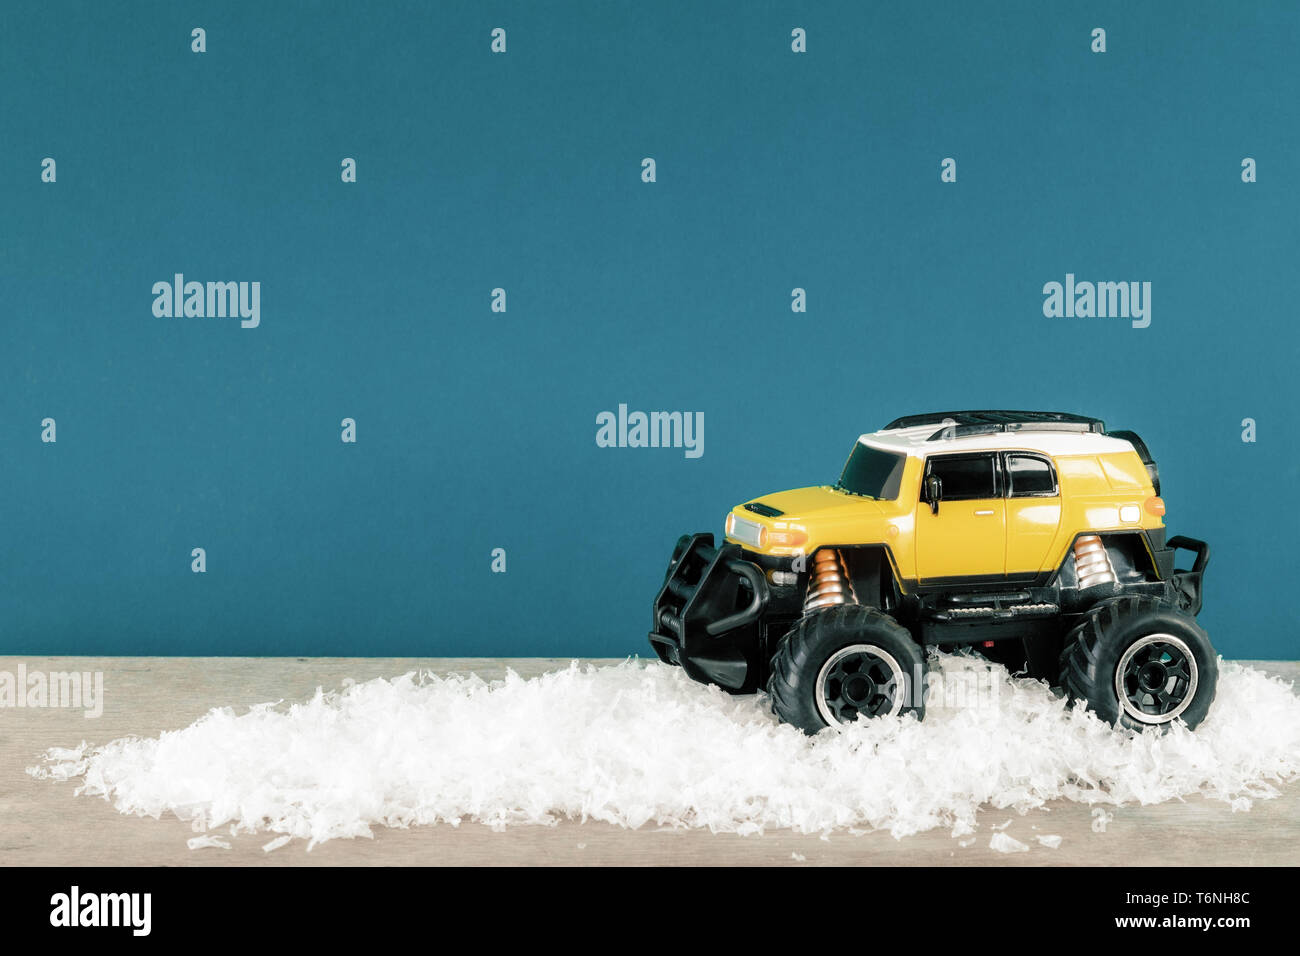 SUV jaune monster voiture camion jouet en hiver neige Banque D'Images